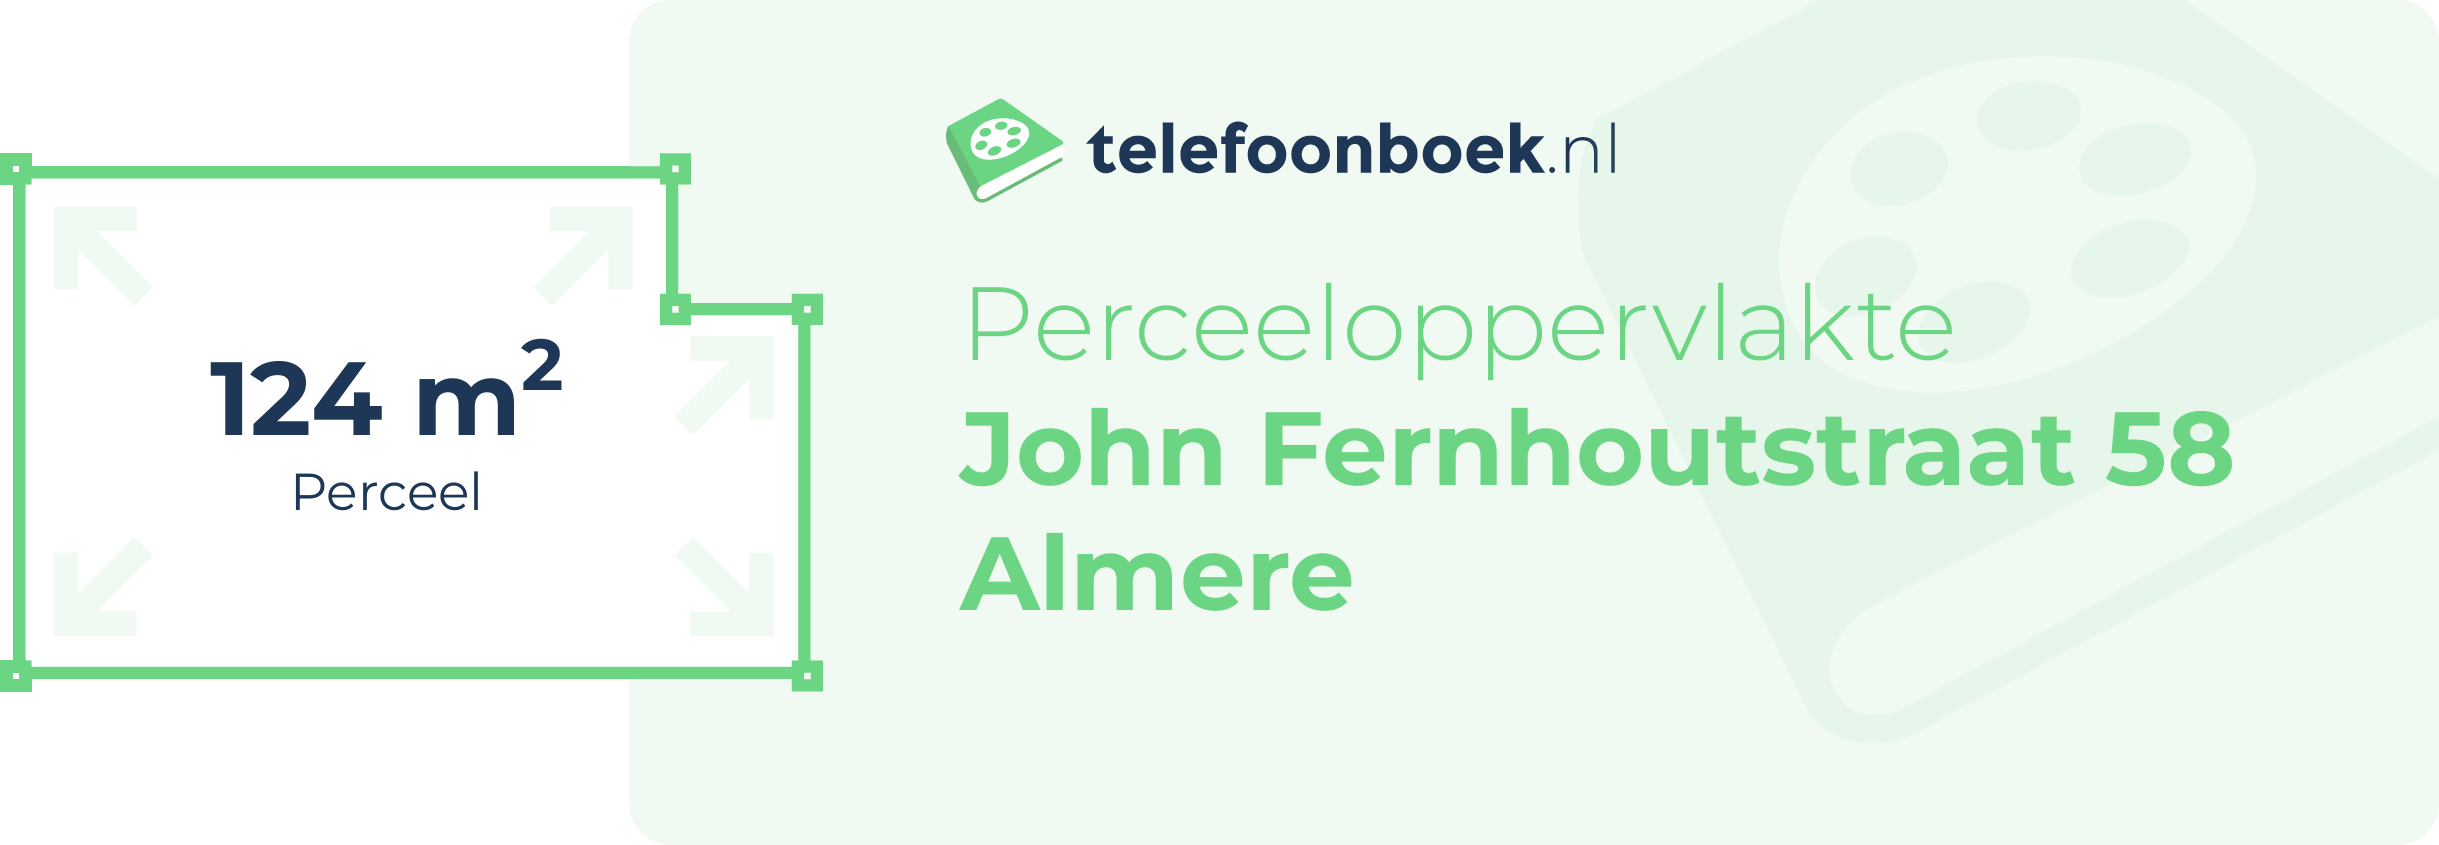 Perceeloppervlakte John Fernhoutstraat 58 Almere